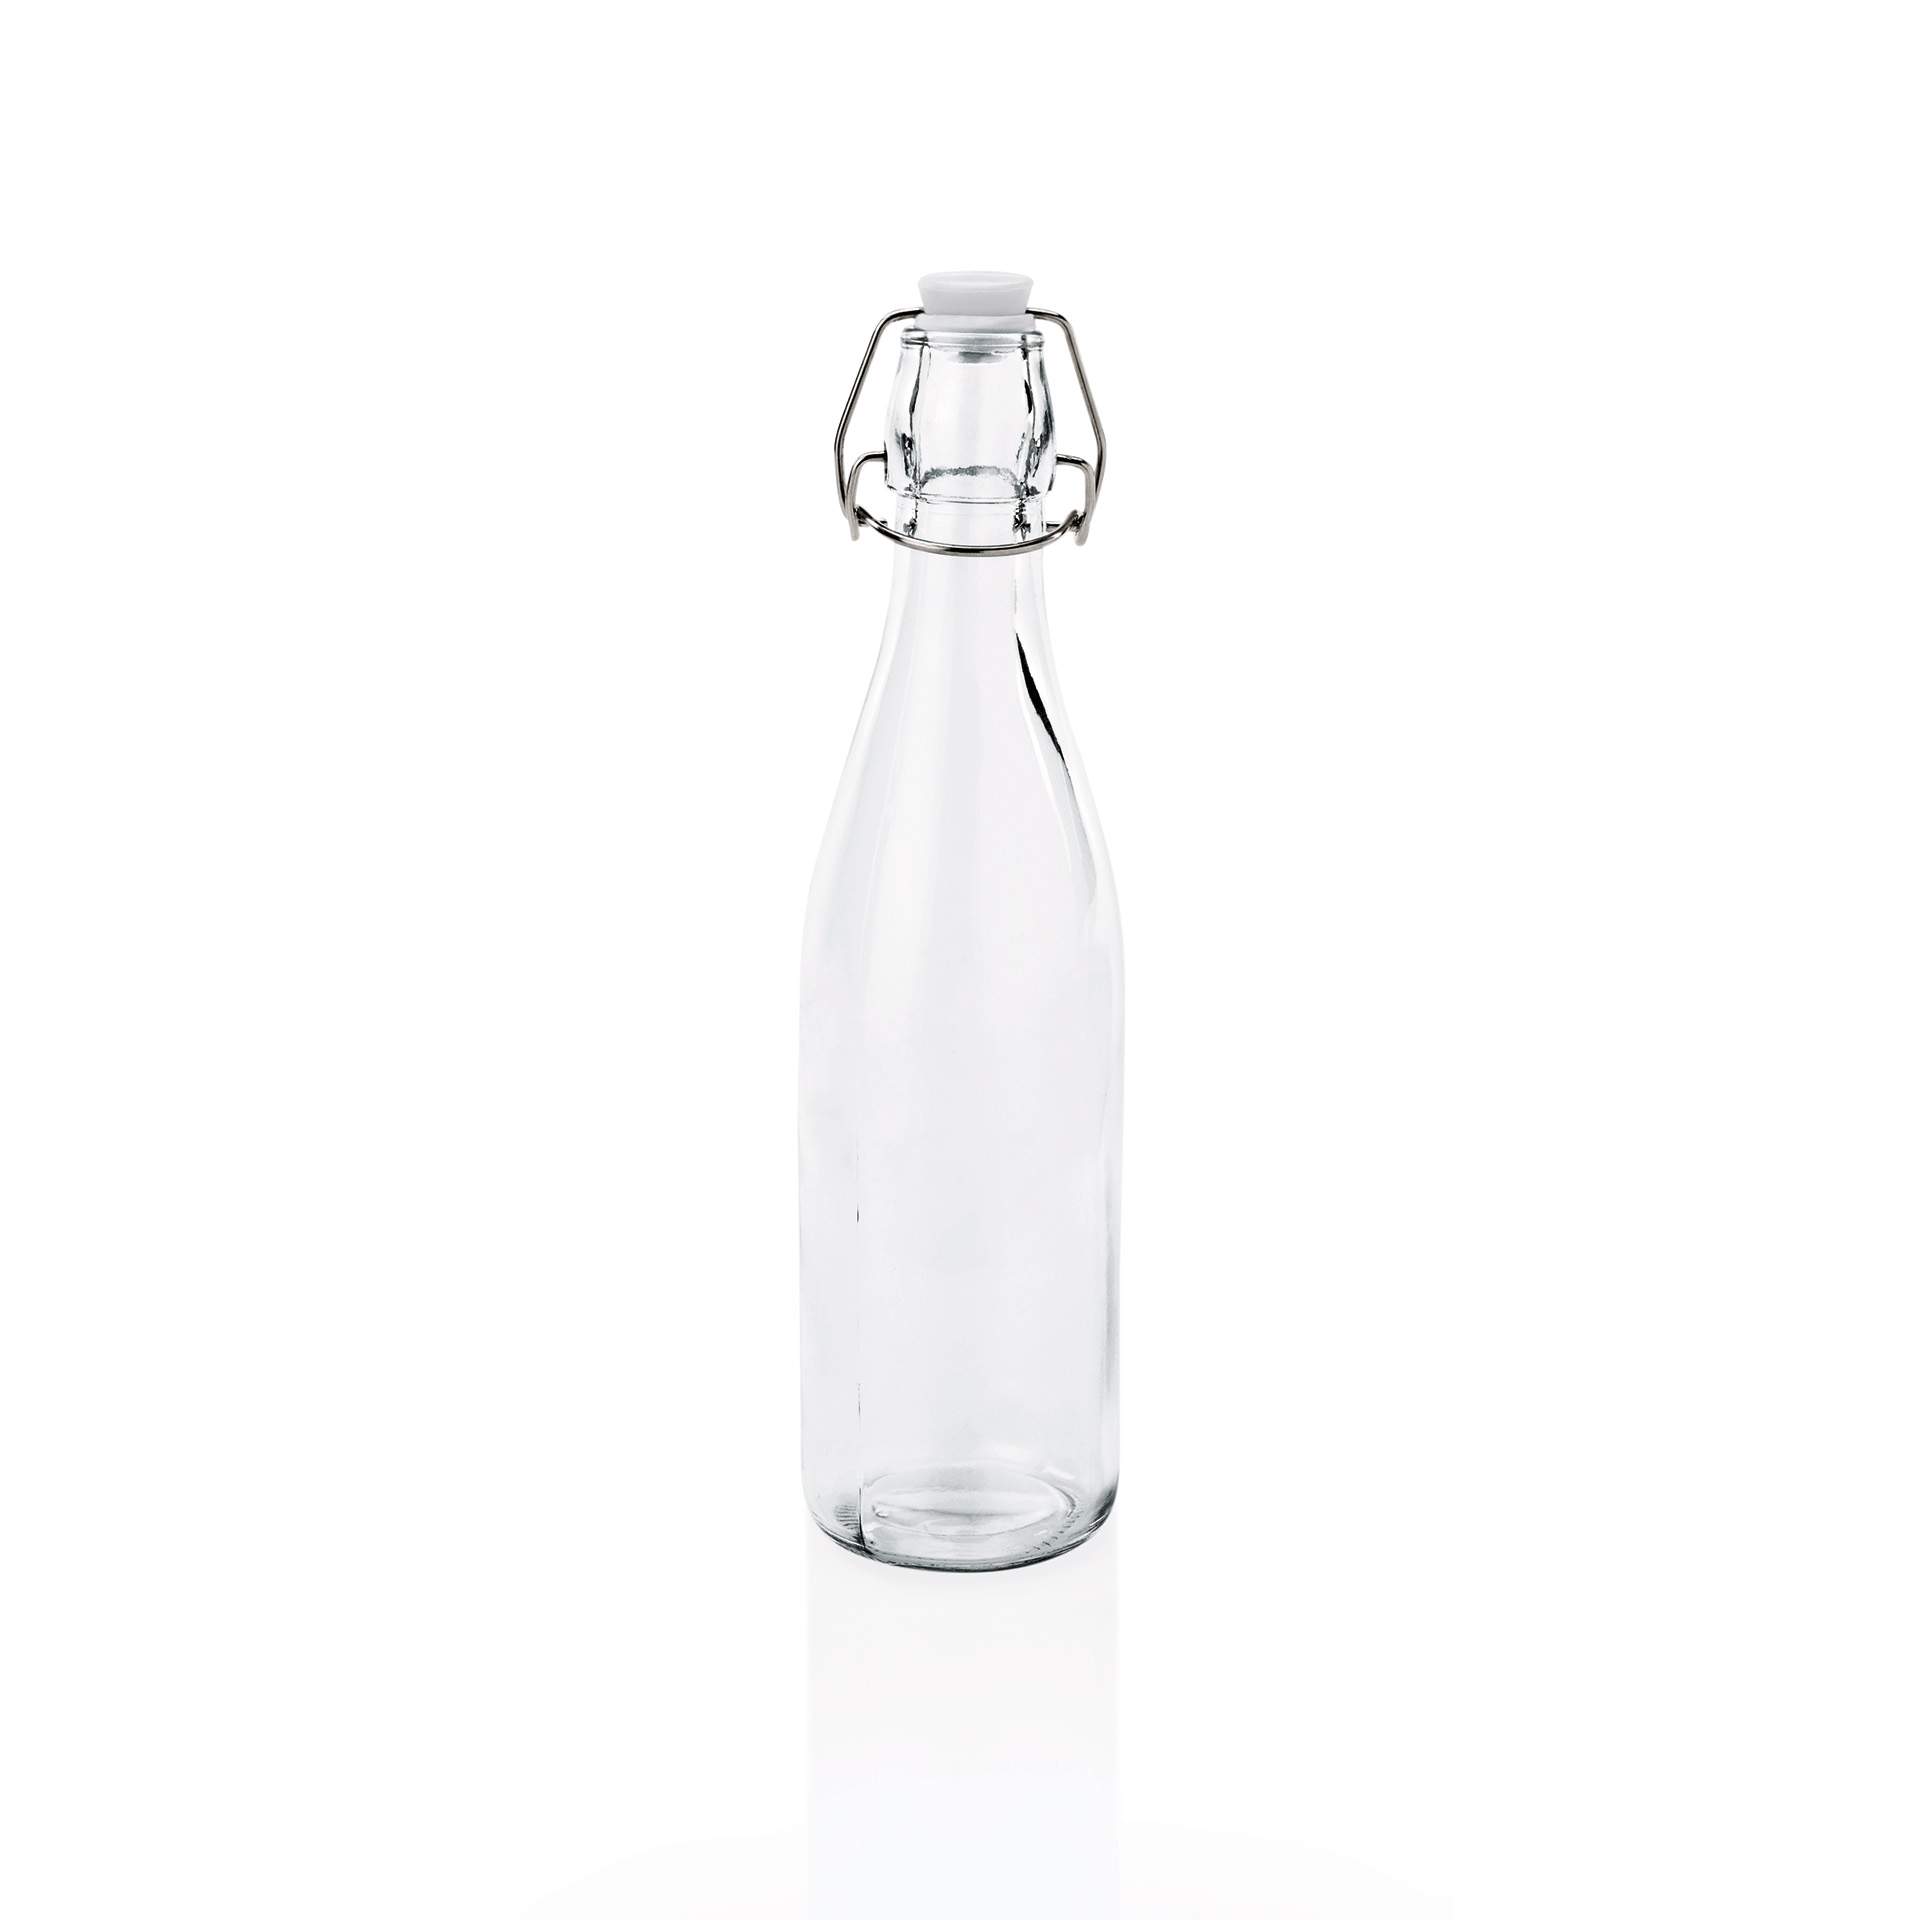 Bügelverschlussflasche - Deckel mit Dichtung - Abm. 27,5 cm -  6,5 cm - Inhalt 0,50 l - Glas - 1788050-A